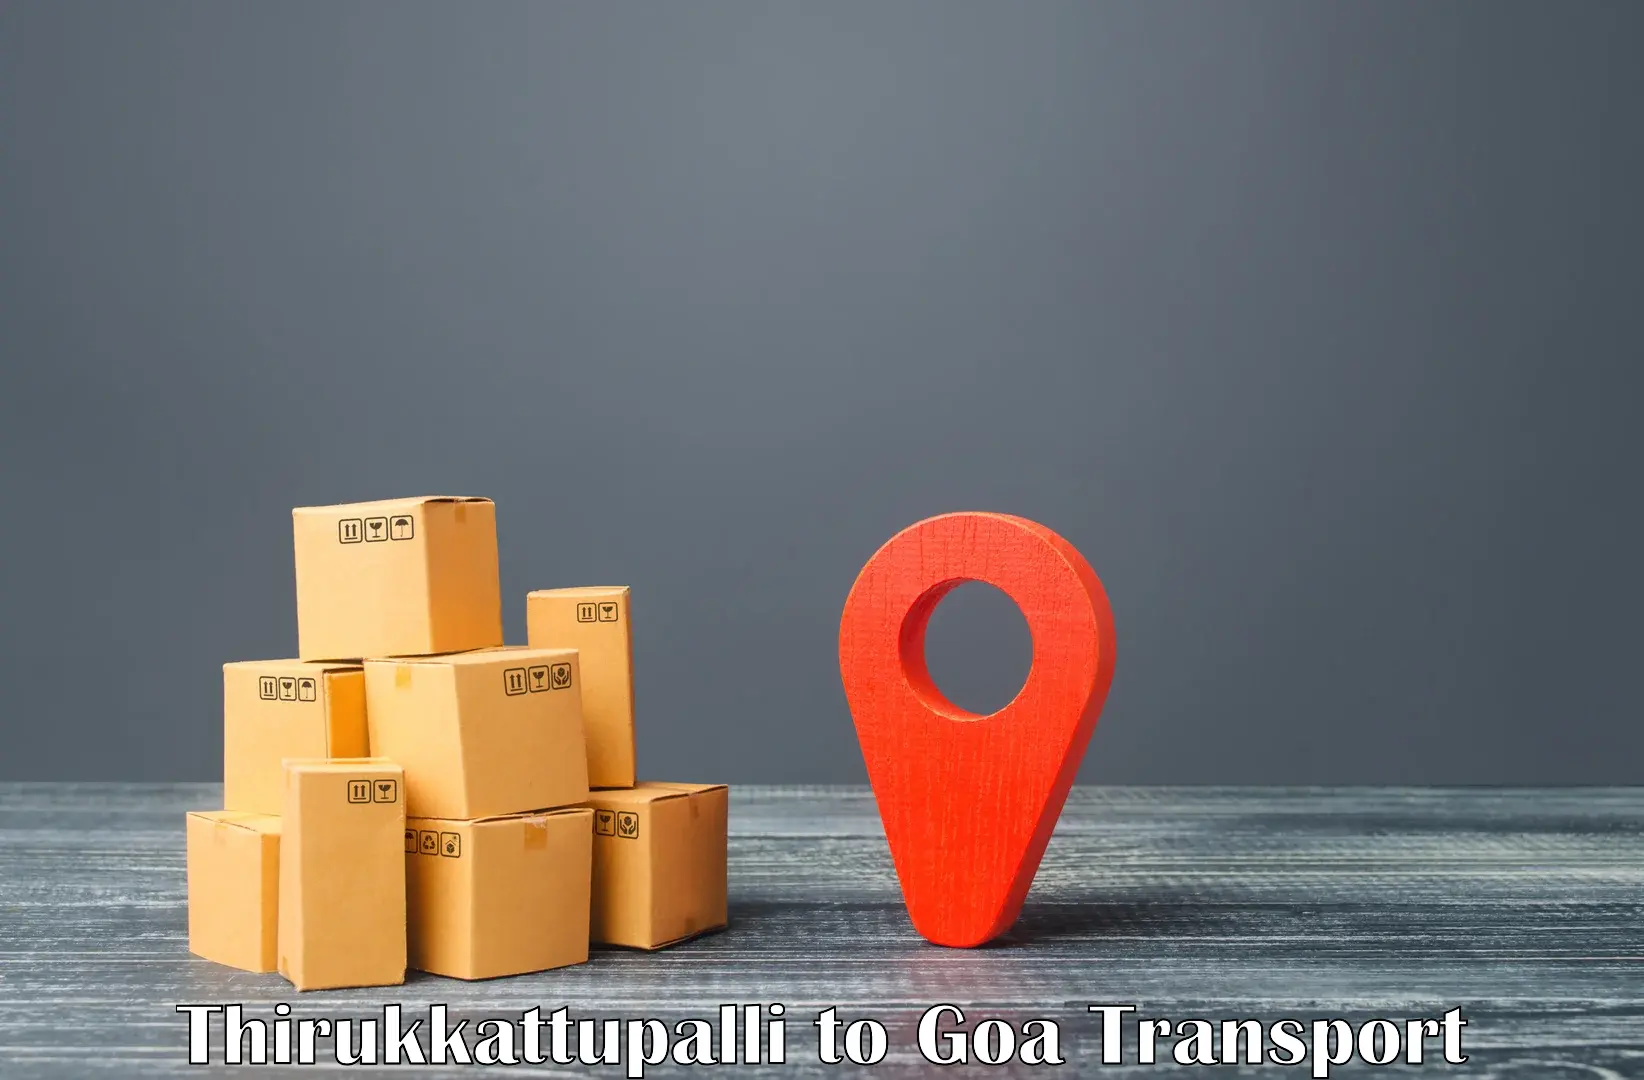 Transport in sharing Thirukkattupalli to Mormugao Port